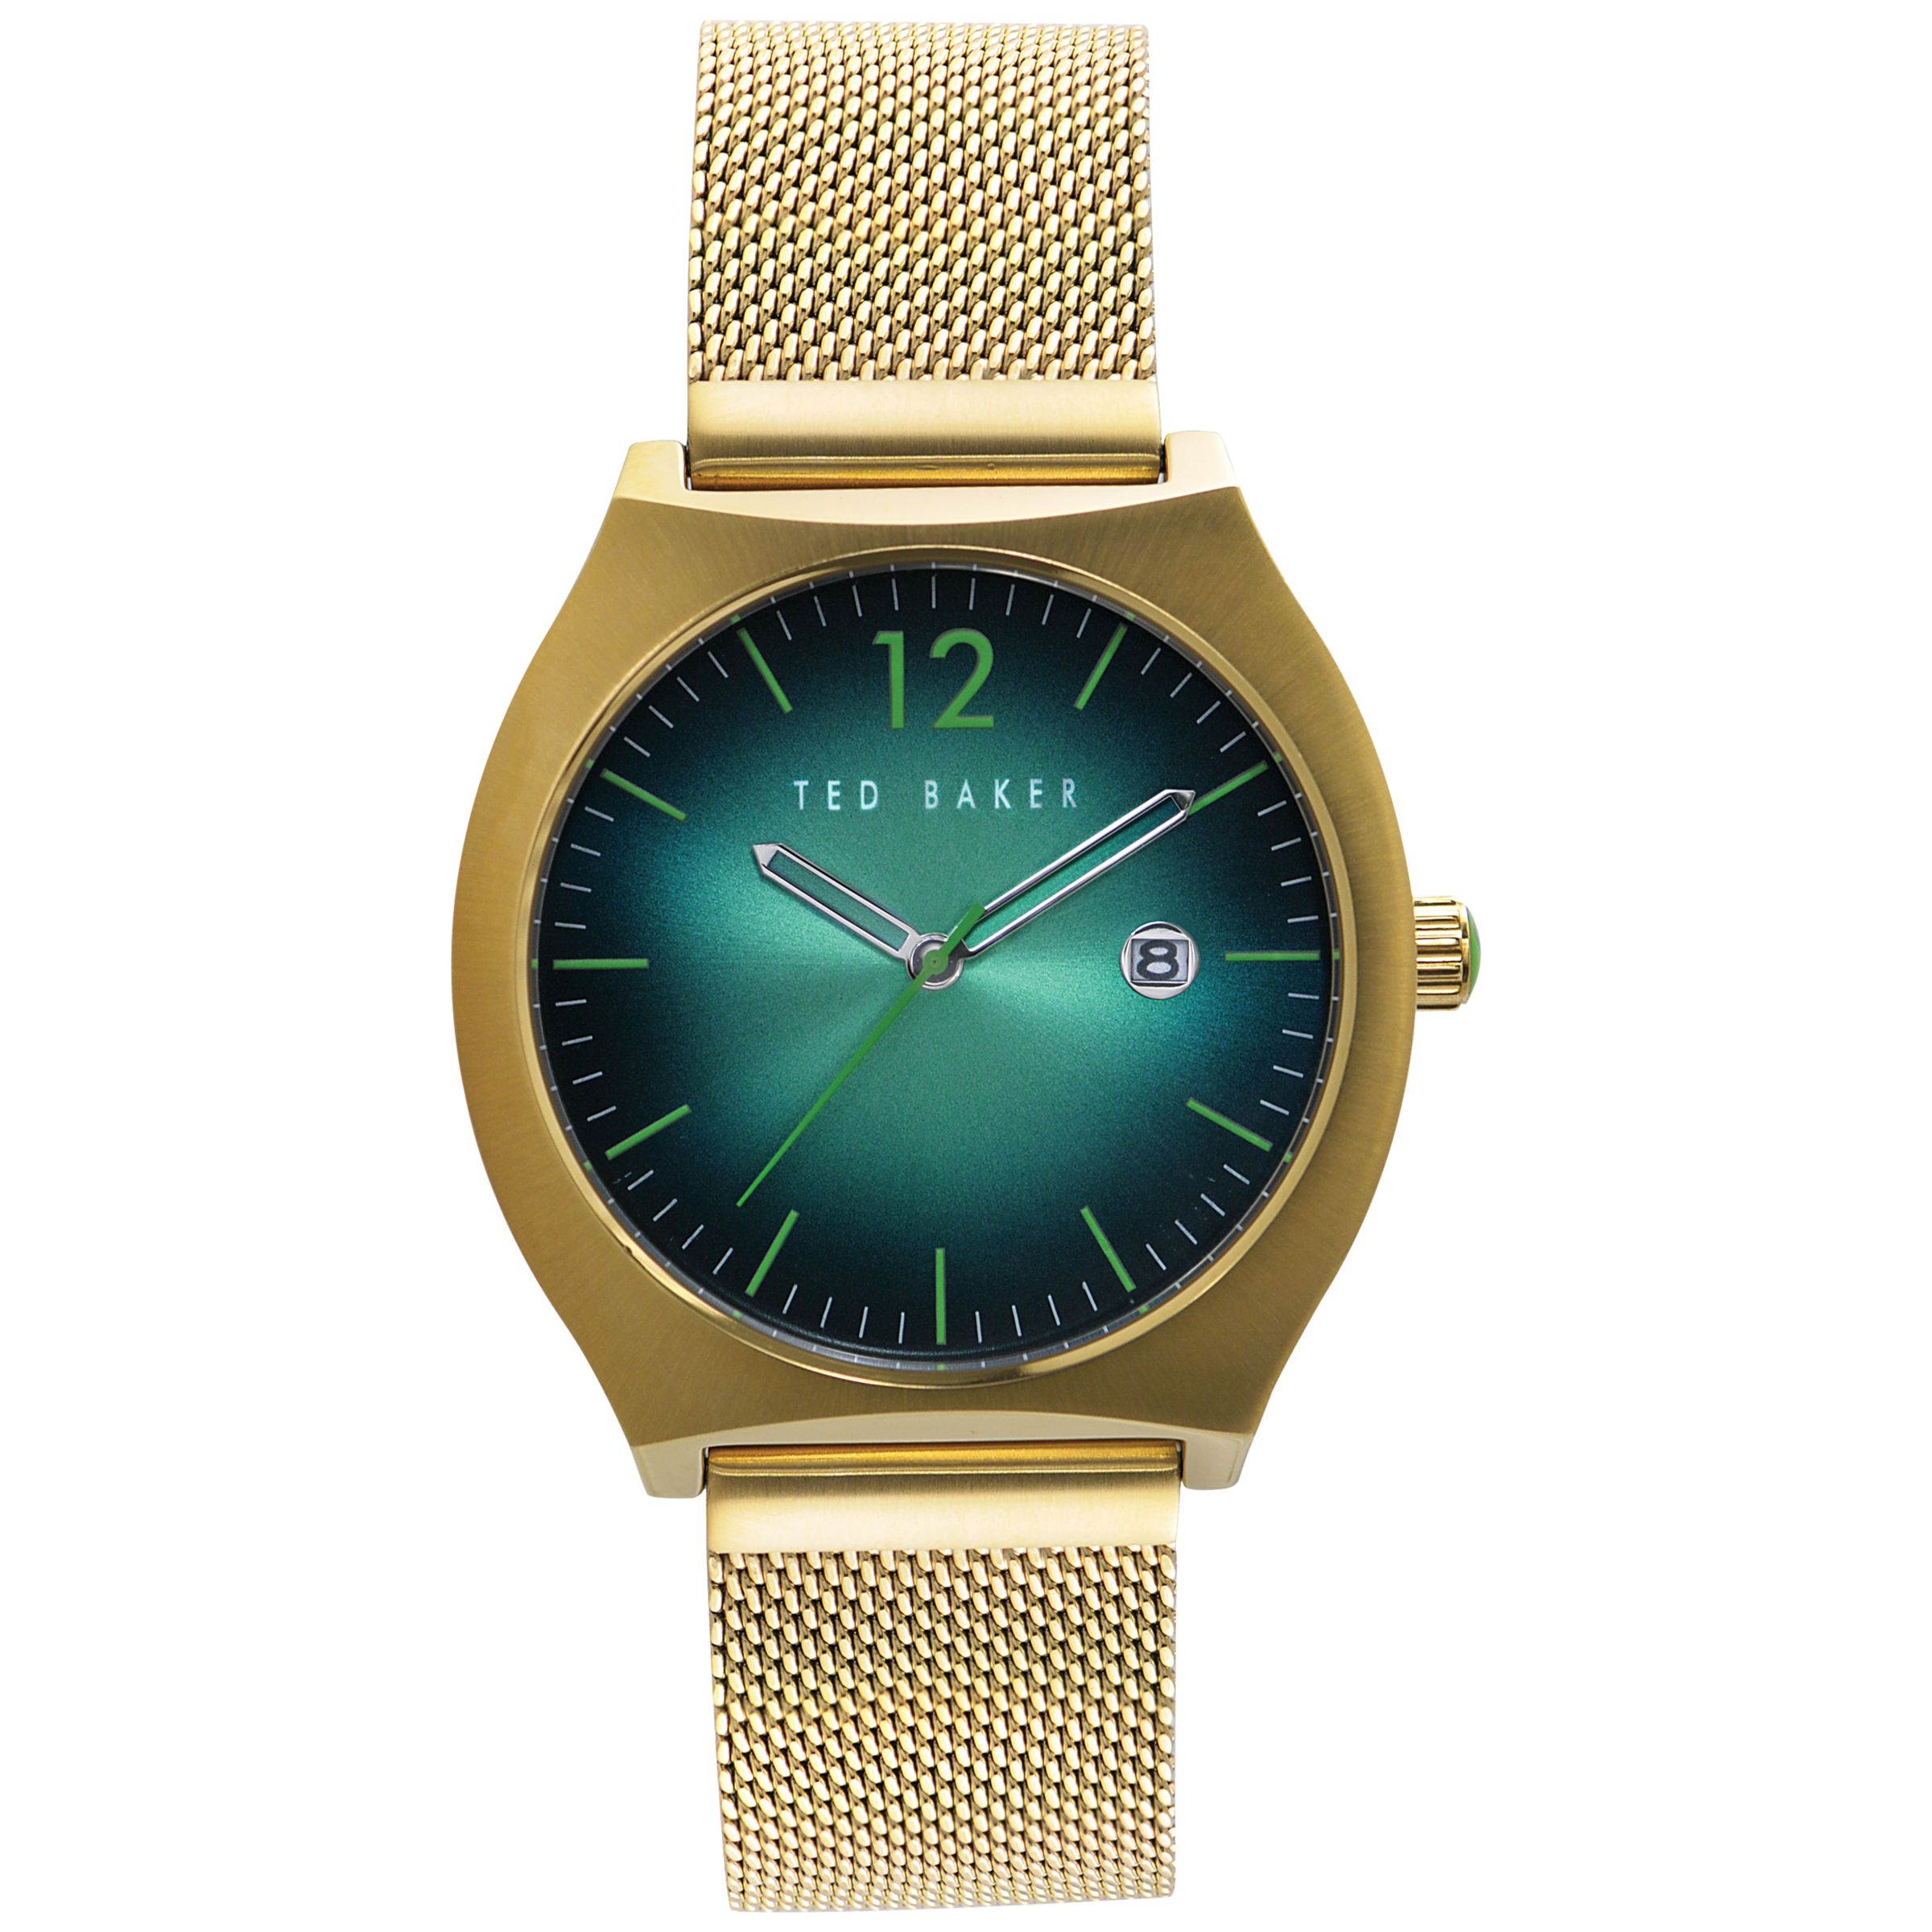 Ted Baker Men's Tonneau Case Mesh Strap Watch, Green / Gold